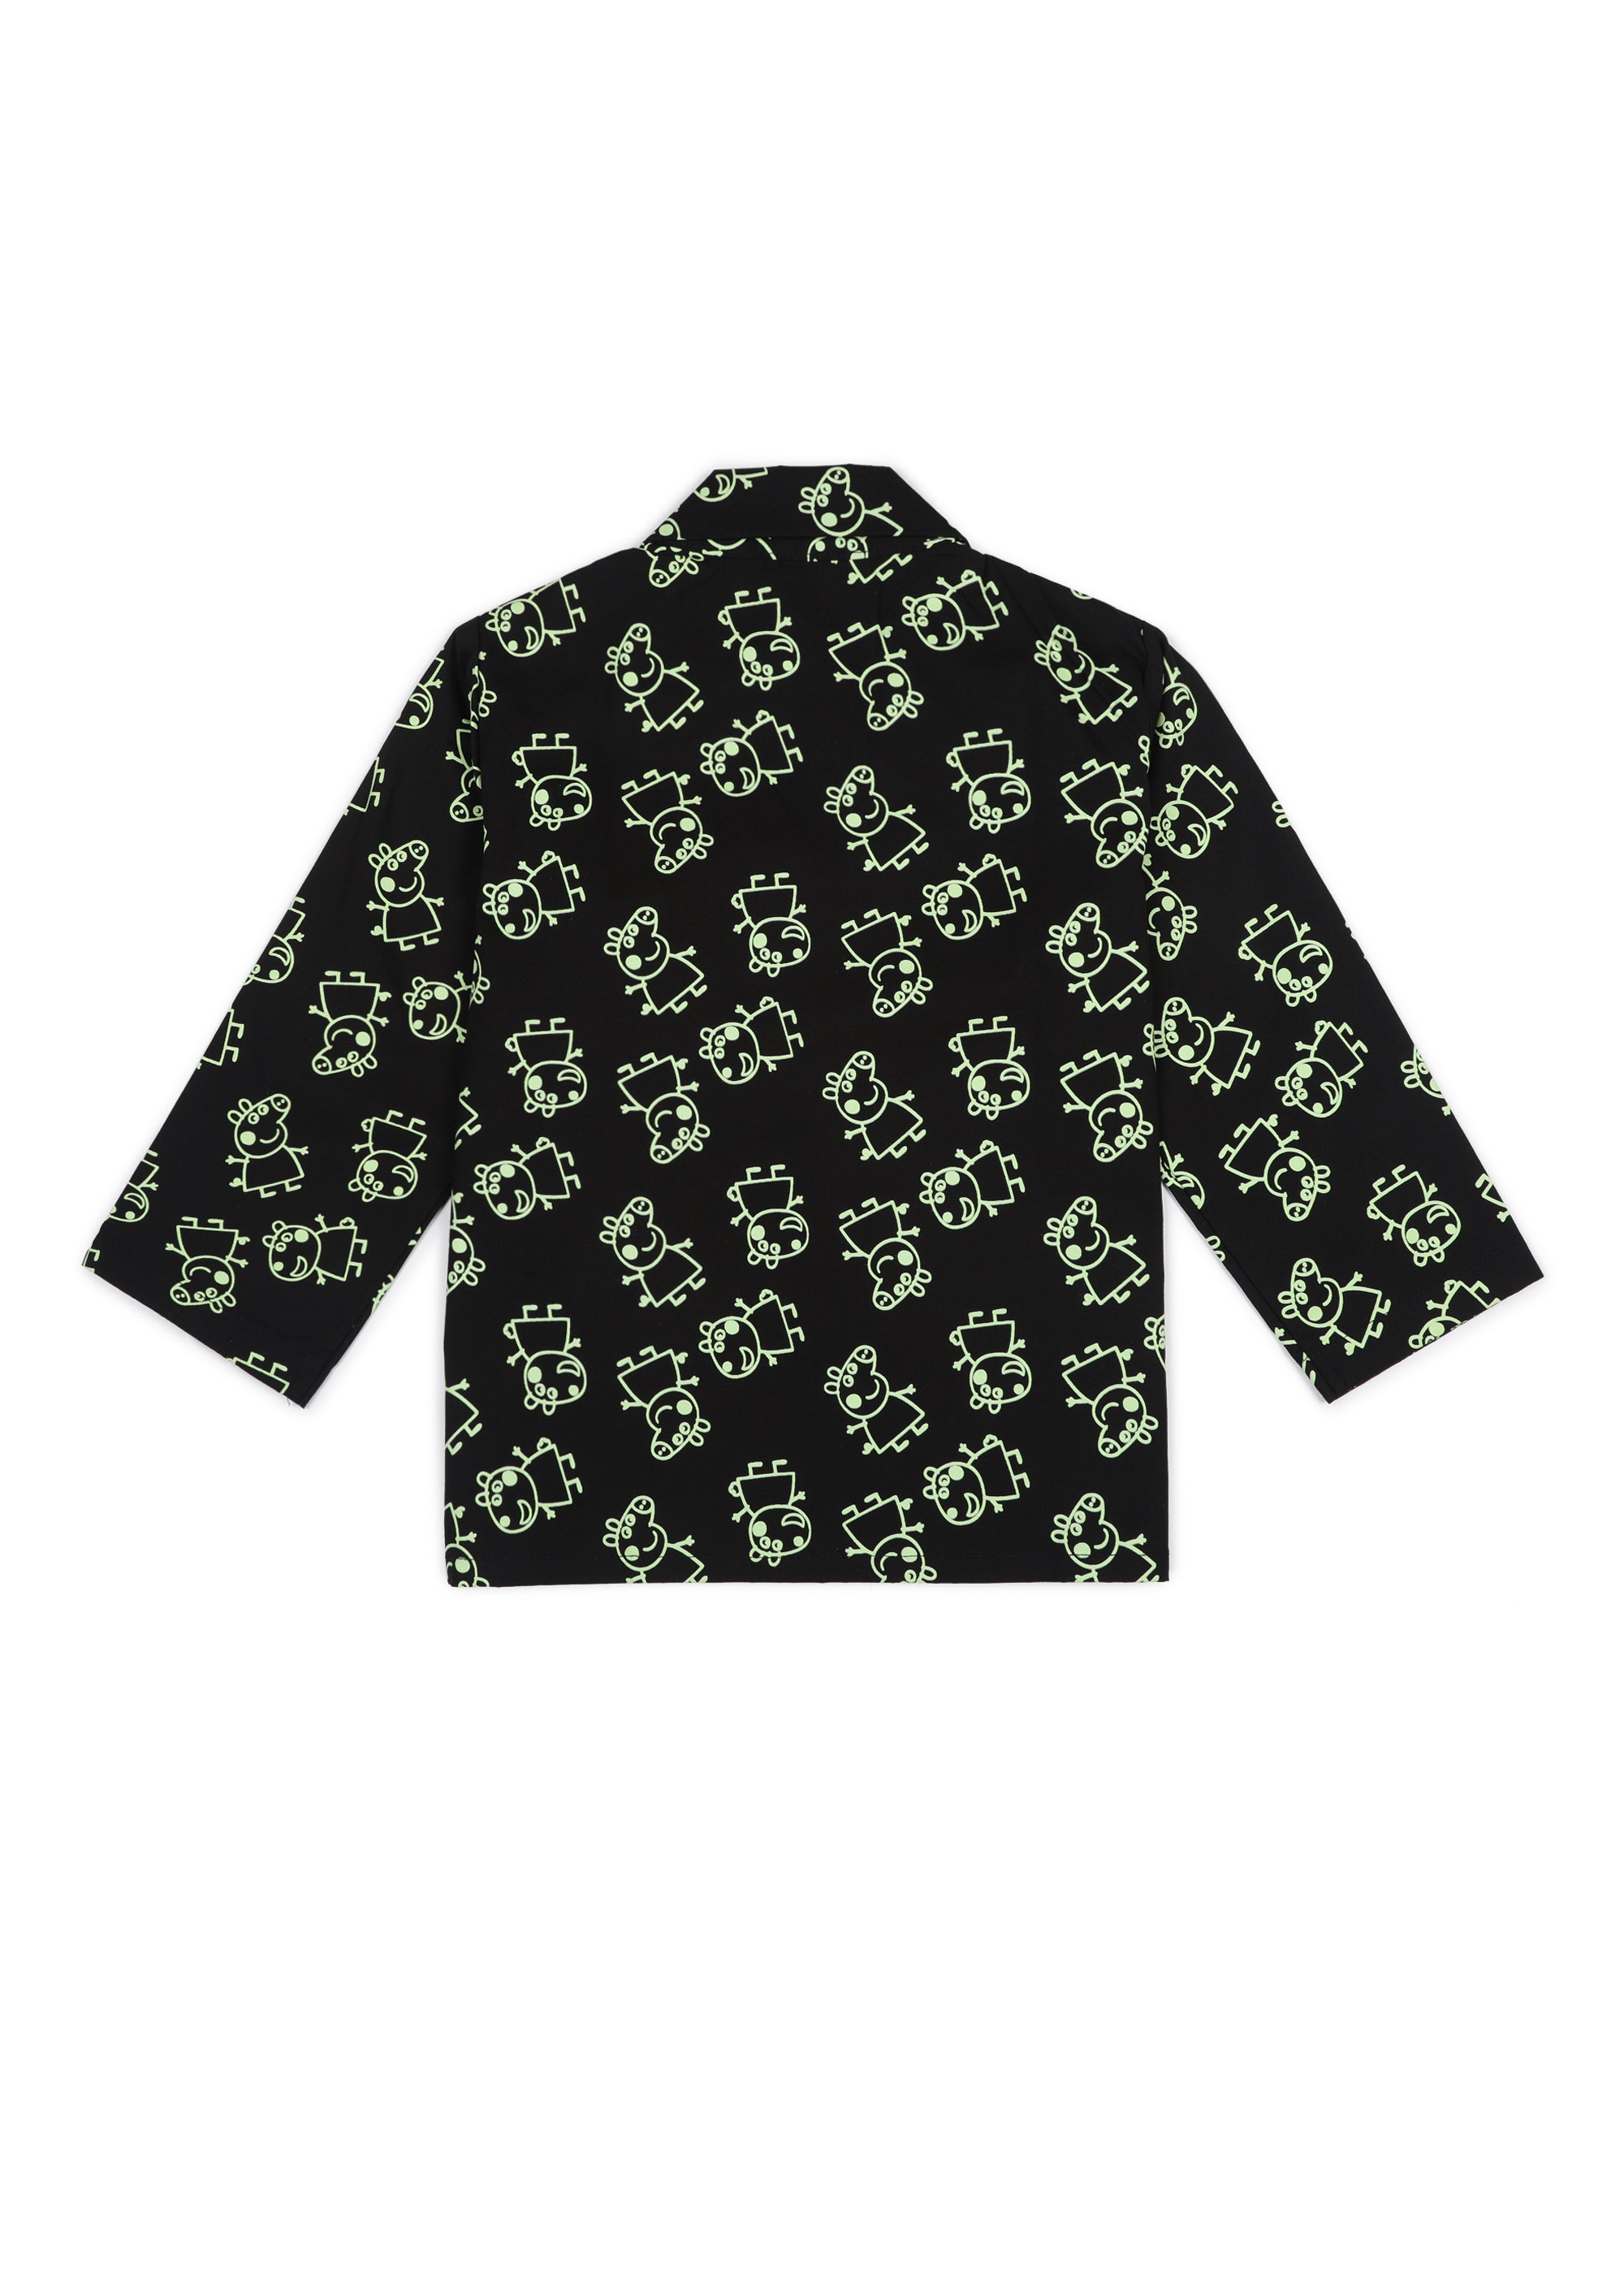 Shopbloom Glow in the Dark Peppa Print Long Sleeve Kids Night Suit